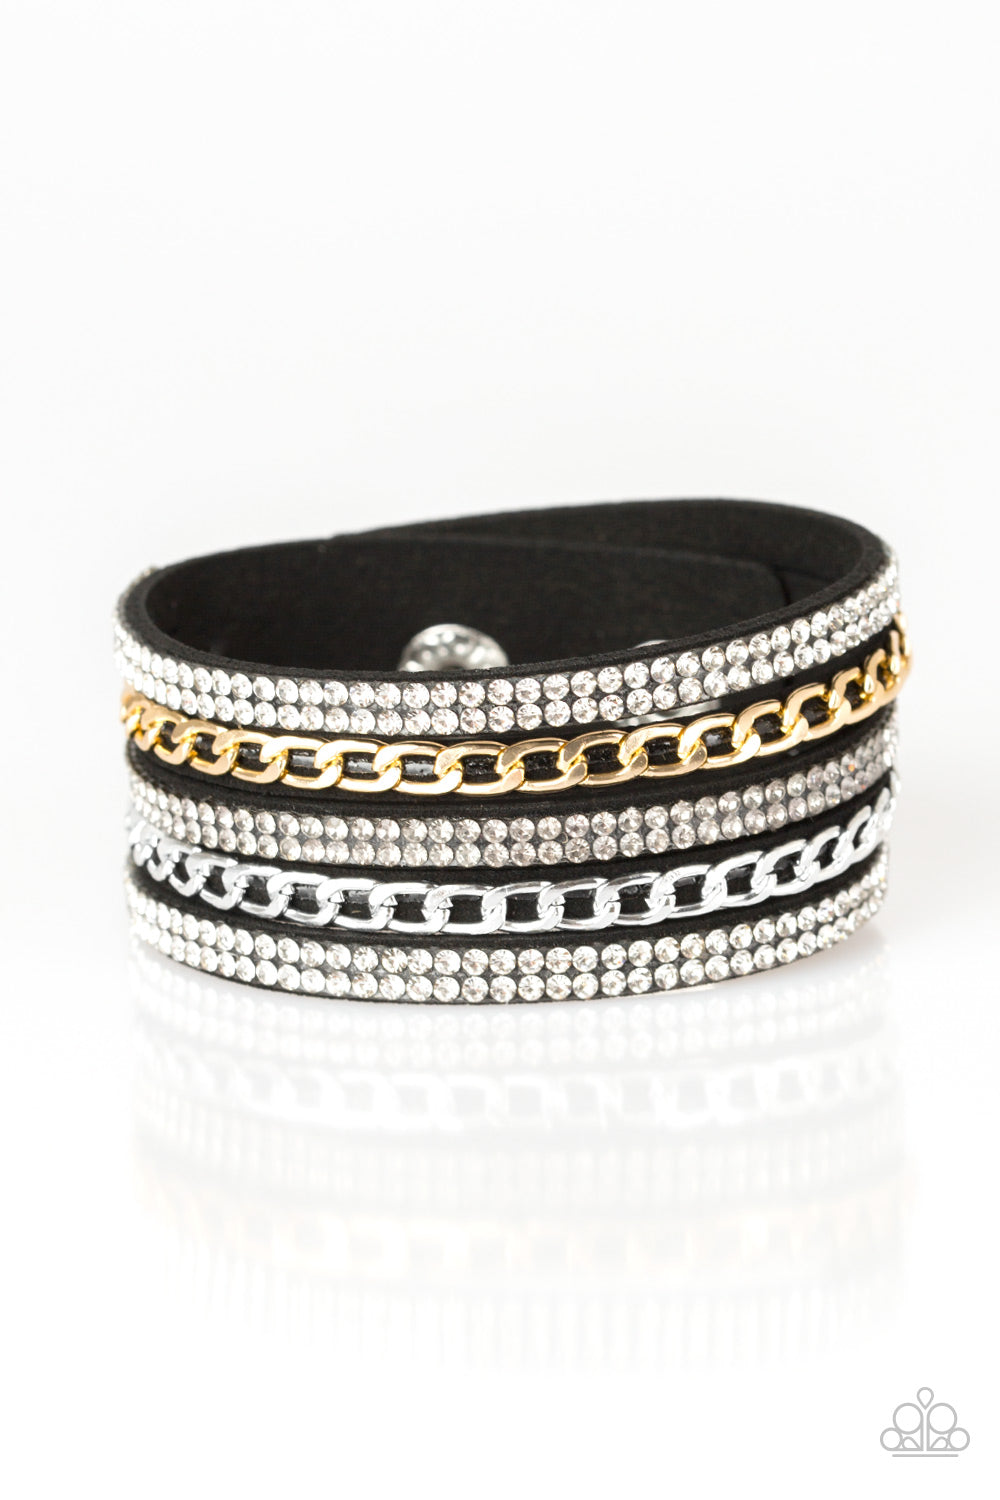 Paparazzi Fashion Fiend Black Single Wrap Snap Bracelet